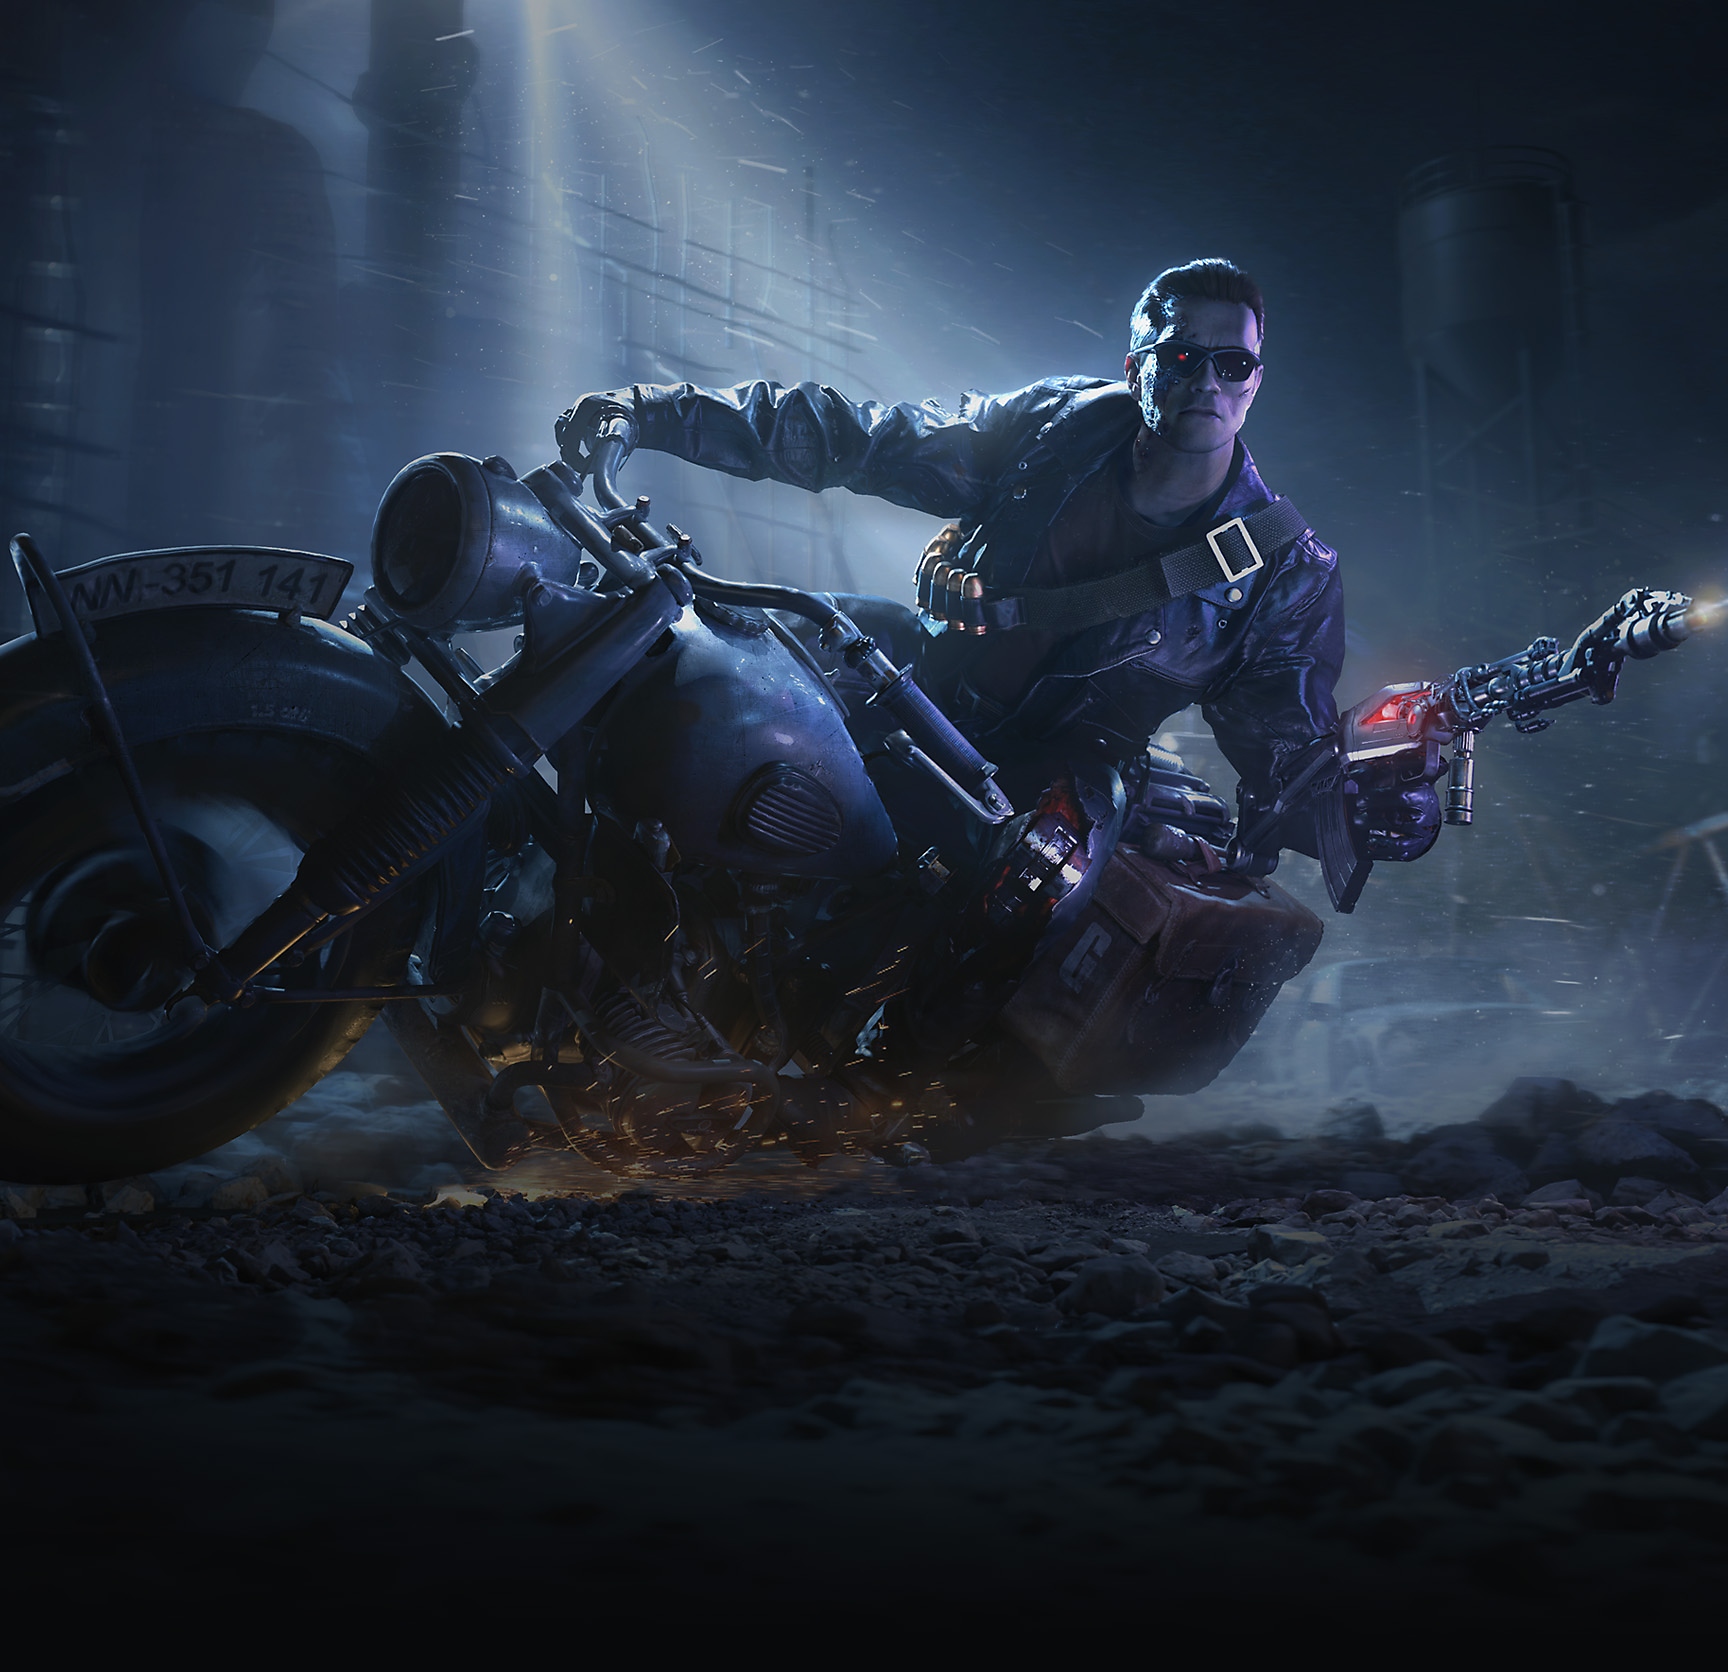 Grafik für zeitlich begrenztes Bundle "Terminator T-800", das den Terminator T-800 zeigt, wie er auf einem Motorrad fährt.